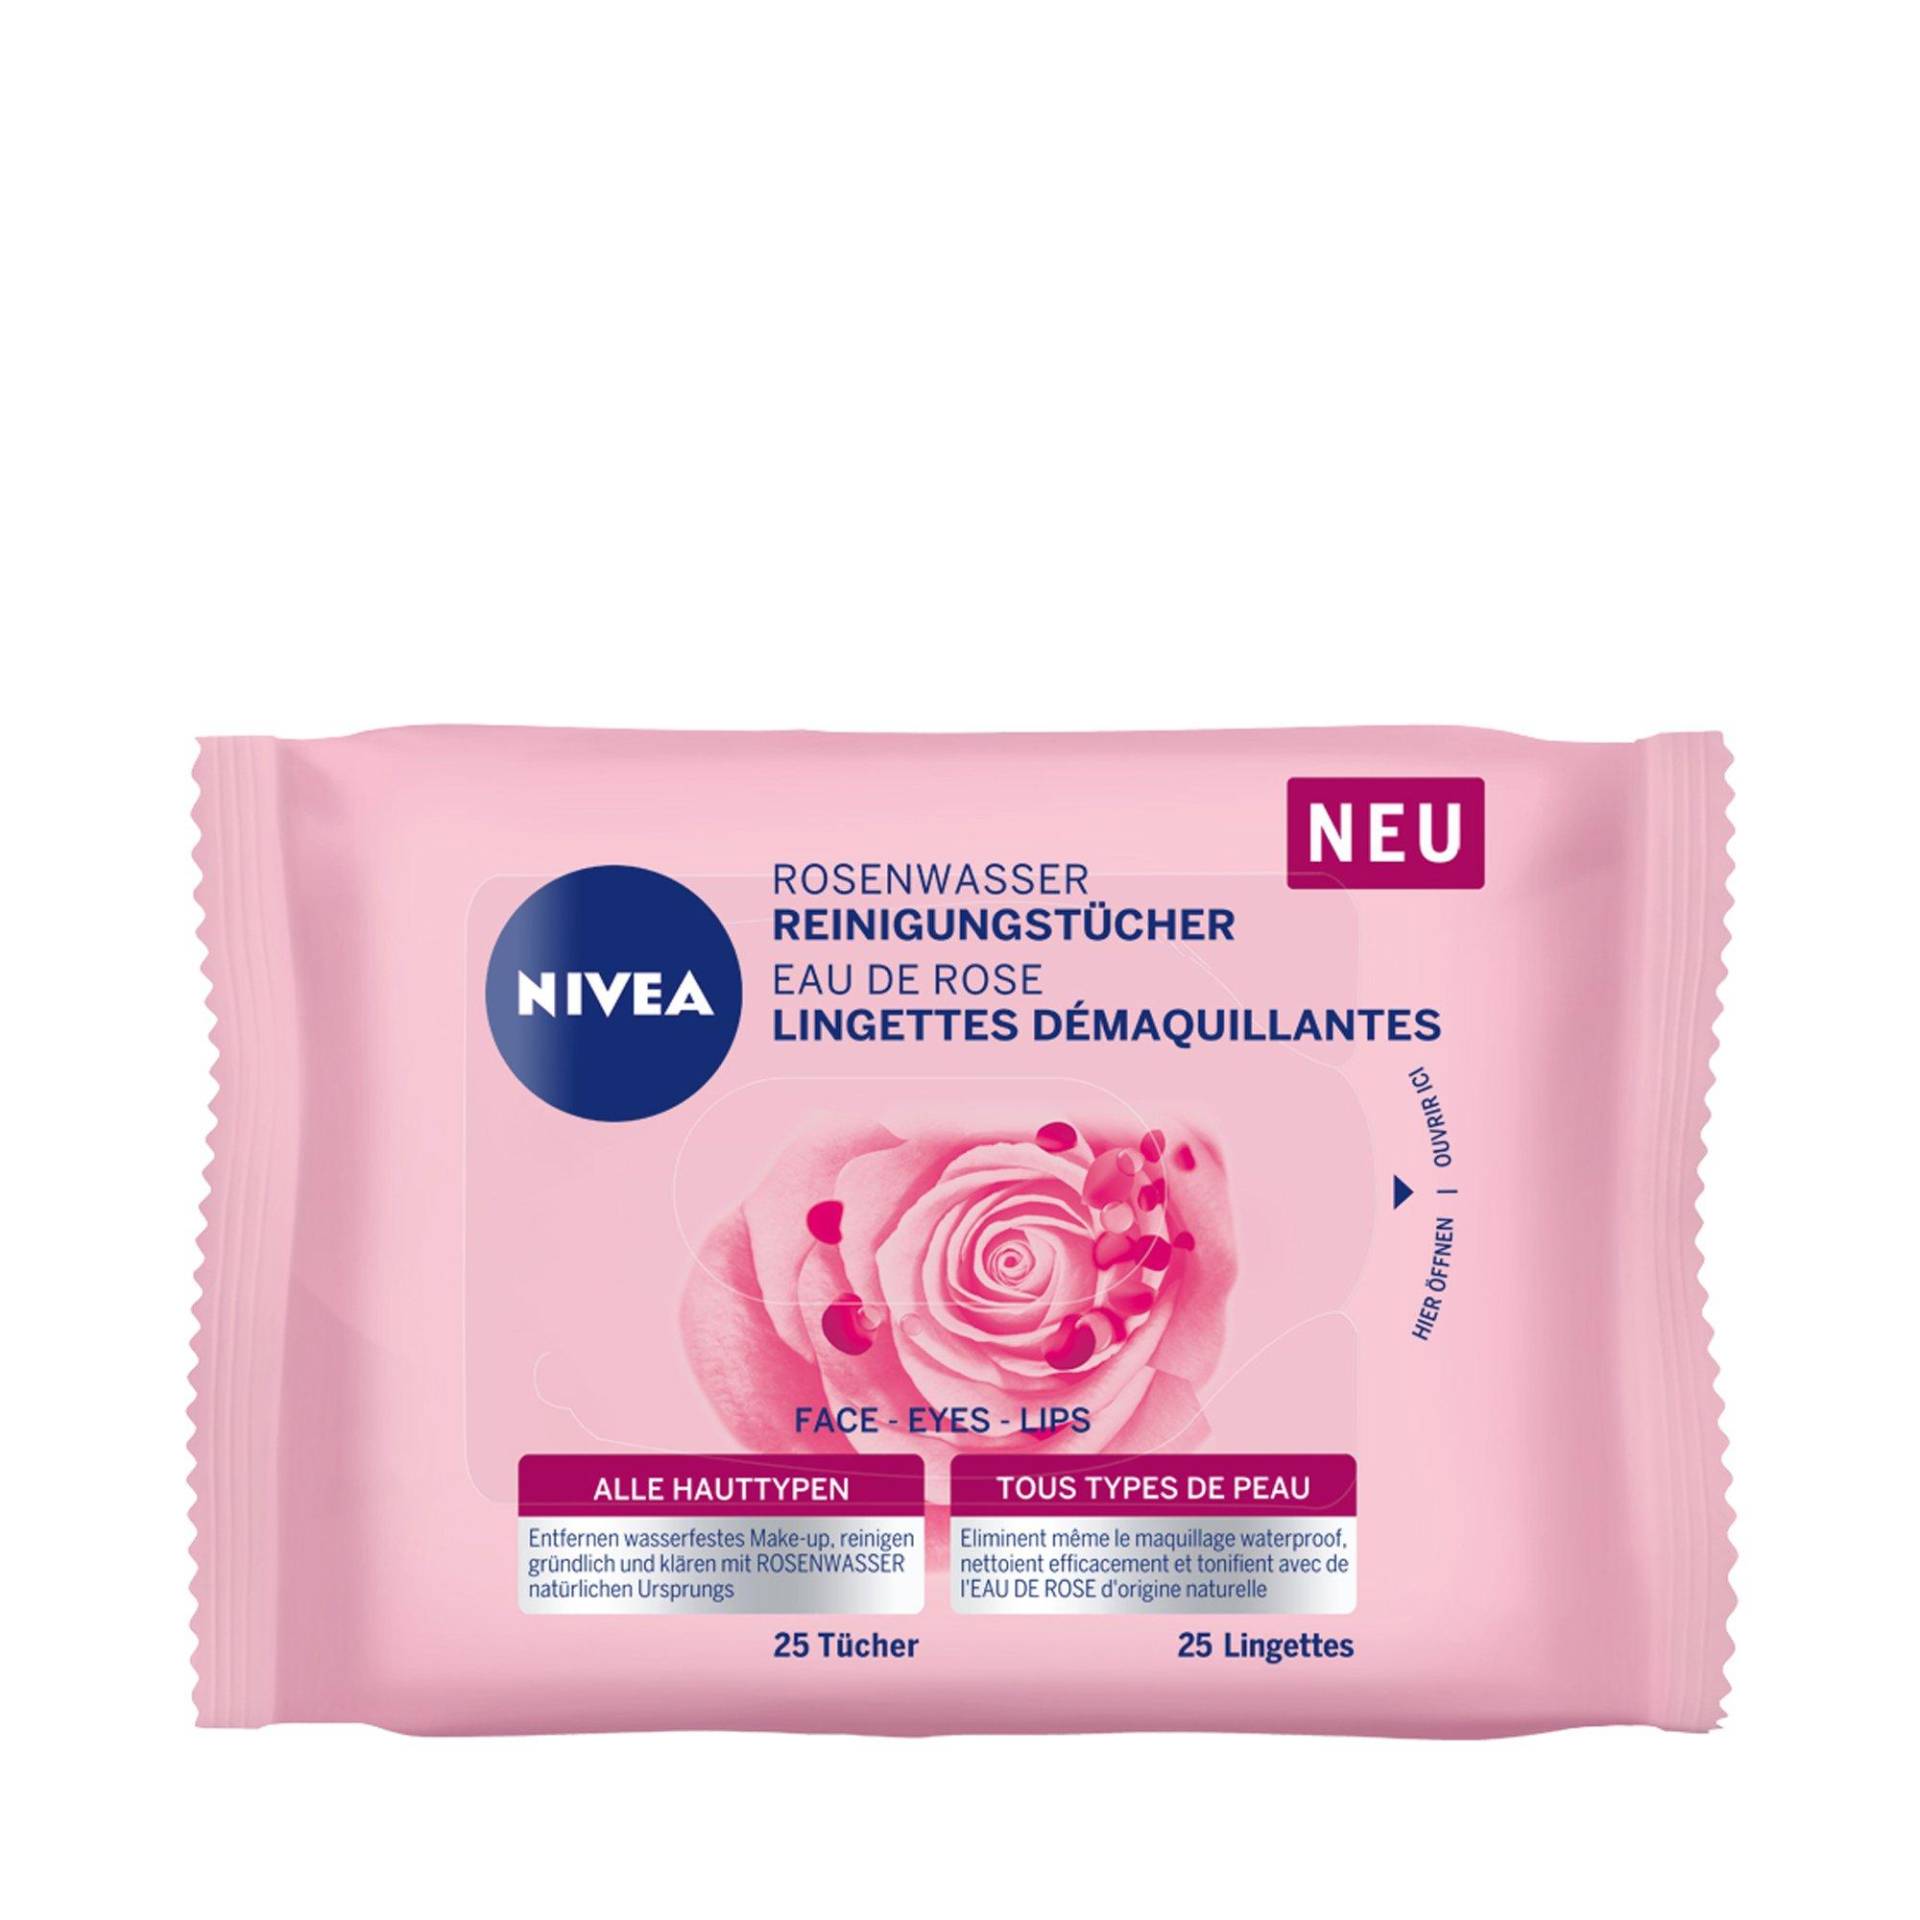 Rosenwasser Reinigungstücher Damen  25 pezzi von NIVEA